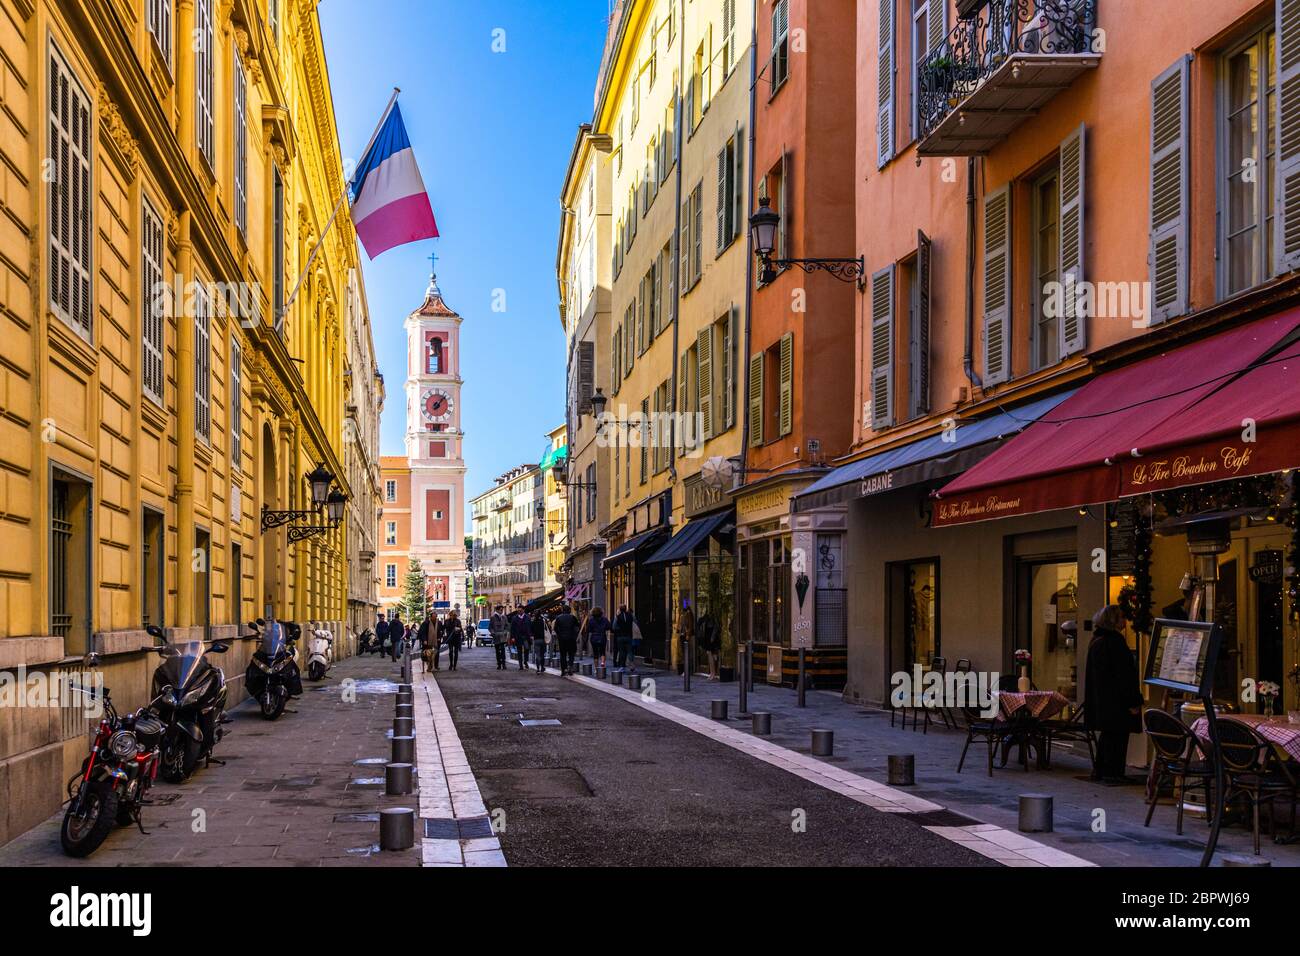 Nice, France, janvier 2020 – UNE rue piétonne typique de la vieille ville de Nice avec un drapeau français provenant d'un bâtiment et de la tour de l'horloge du Palais Rusca Banque D'Images